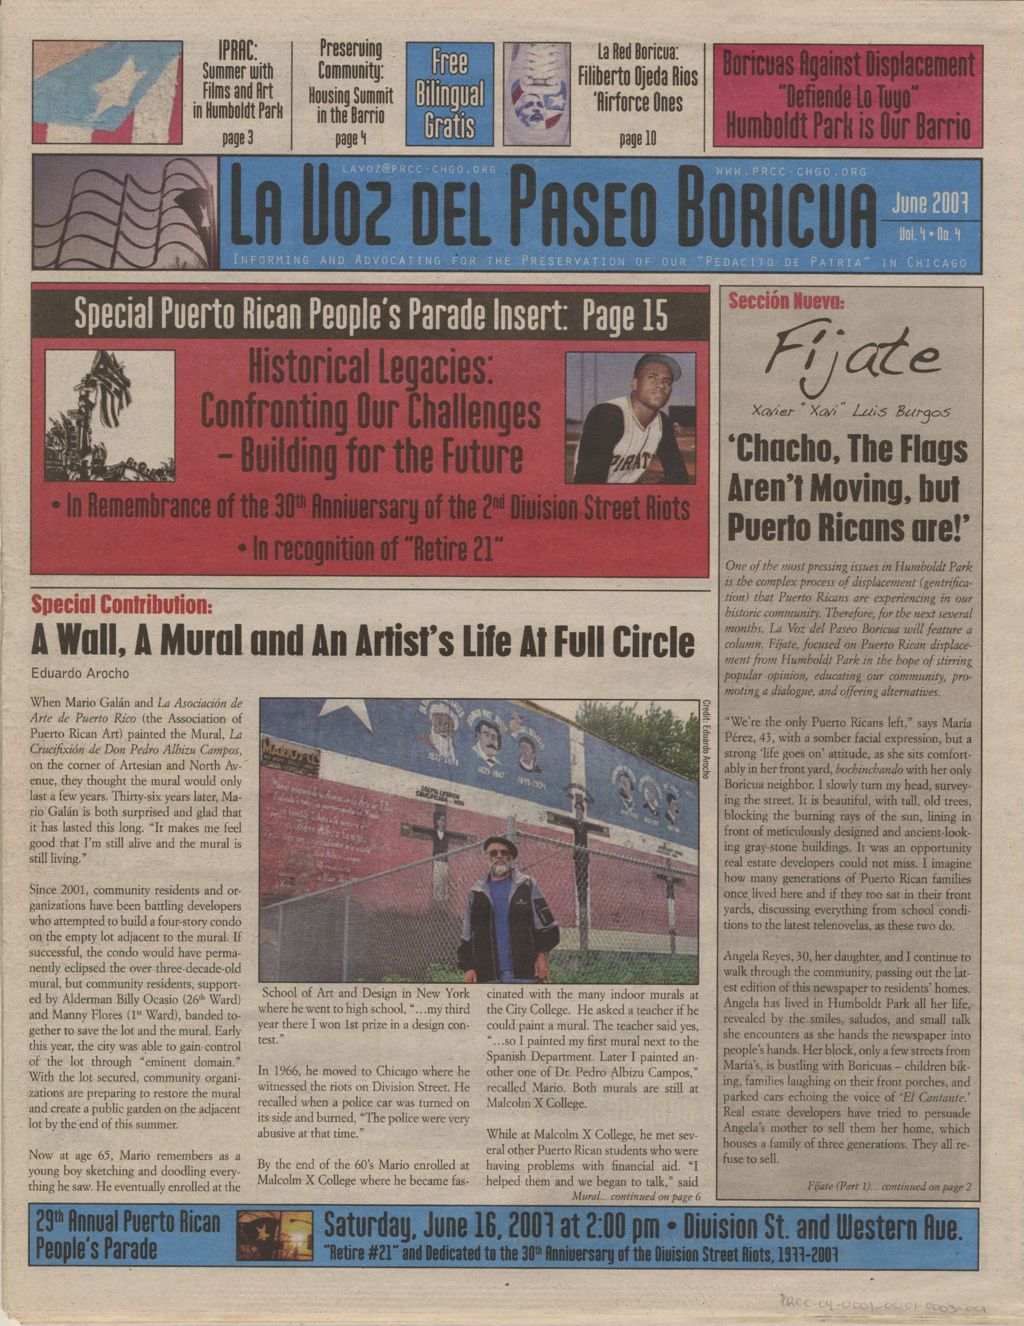 La Voz del Paseo Boricua; June 2007; vol. 4, no. 4 (Spanish and English covers)